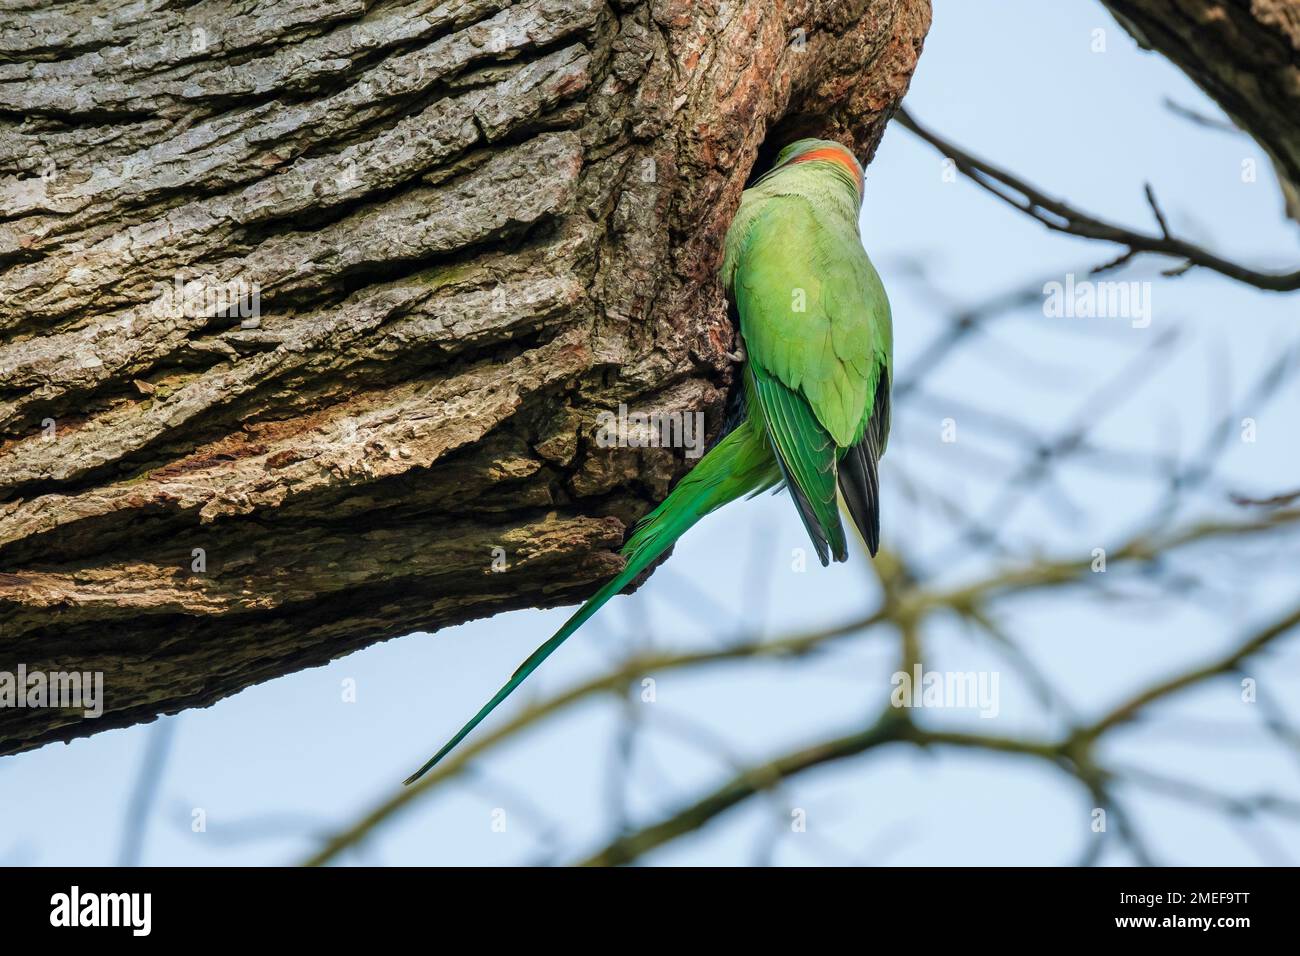 rose-ringed parakeet, ring-necked parakeet, Psittacula krameri, Bird at nest hole Stock Photo